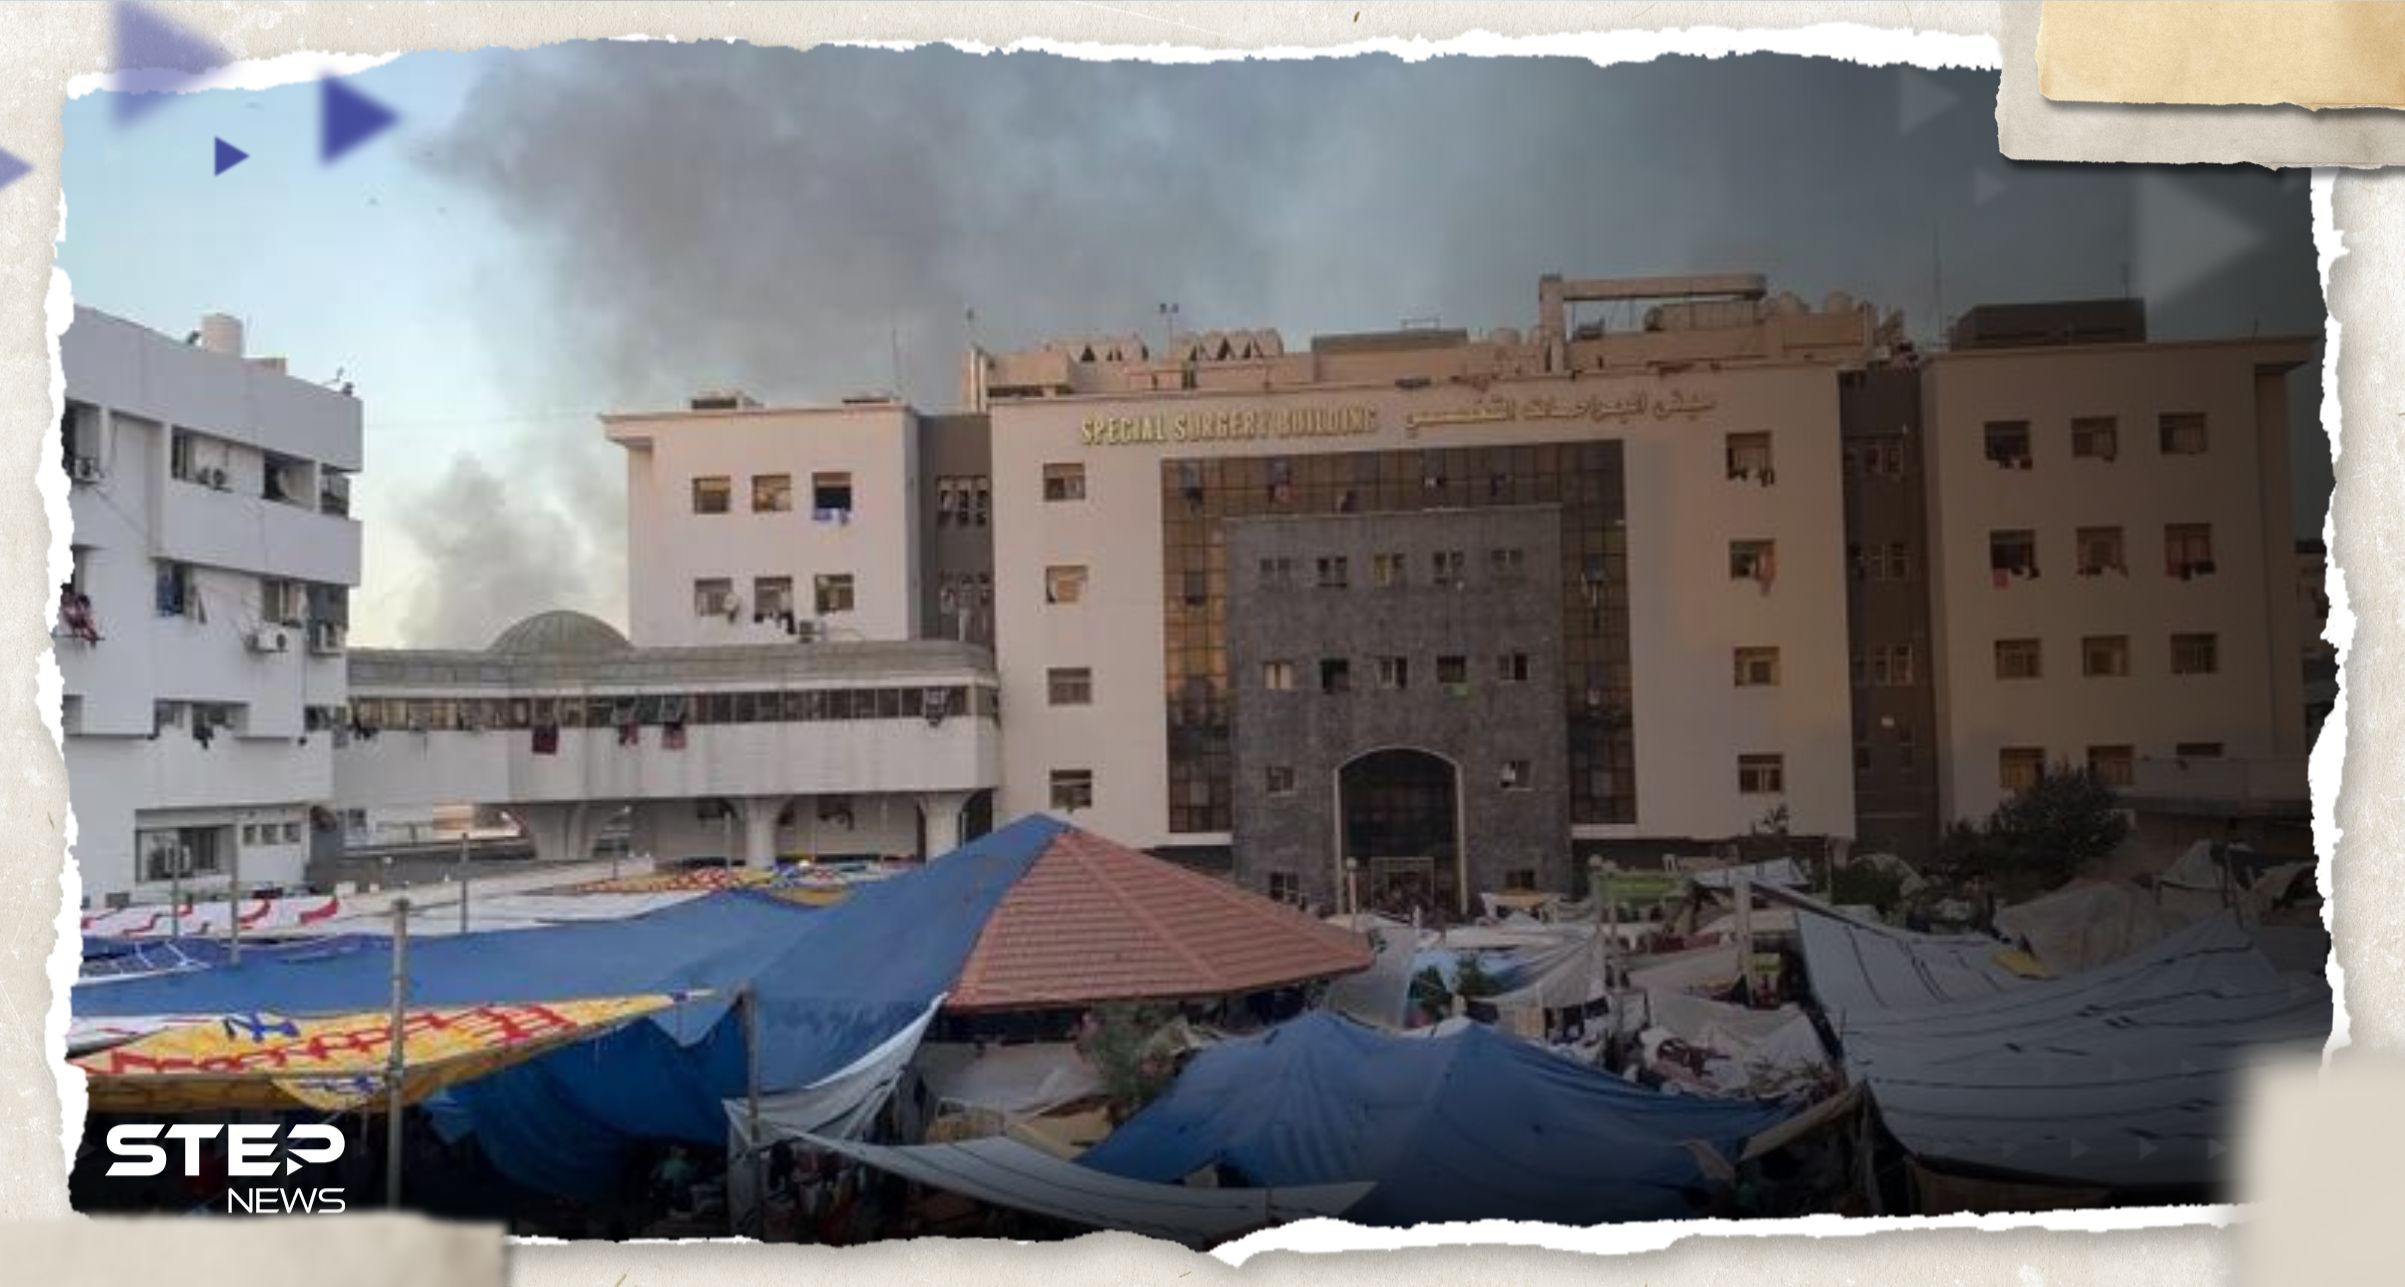 قناة مصرية تُعلن مقتل مصورها في محيط بوابة مستشفى الشفاء بغزة